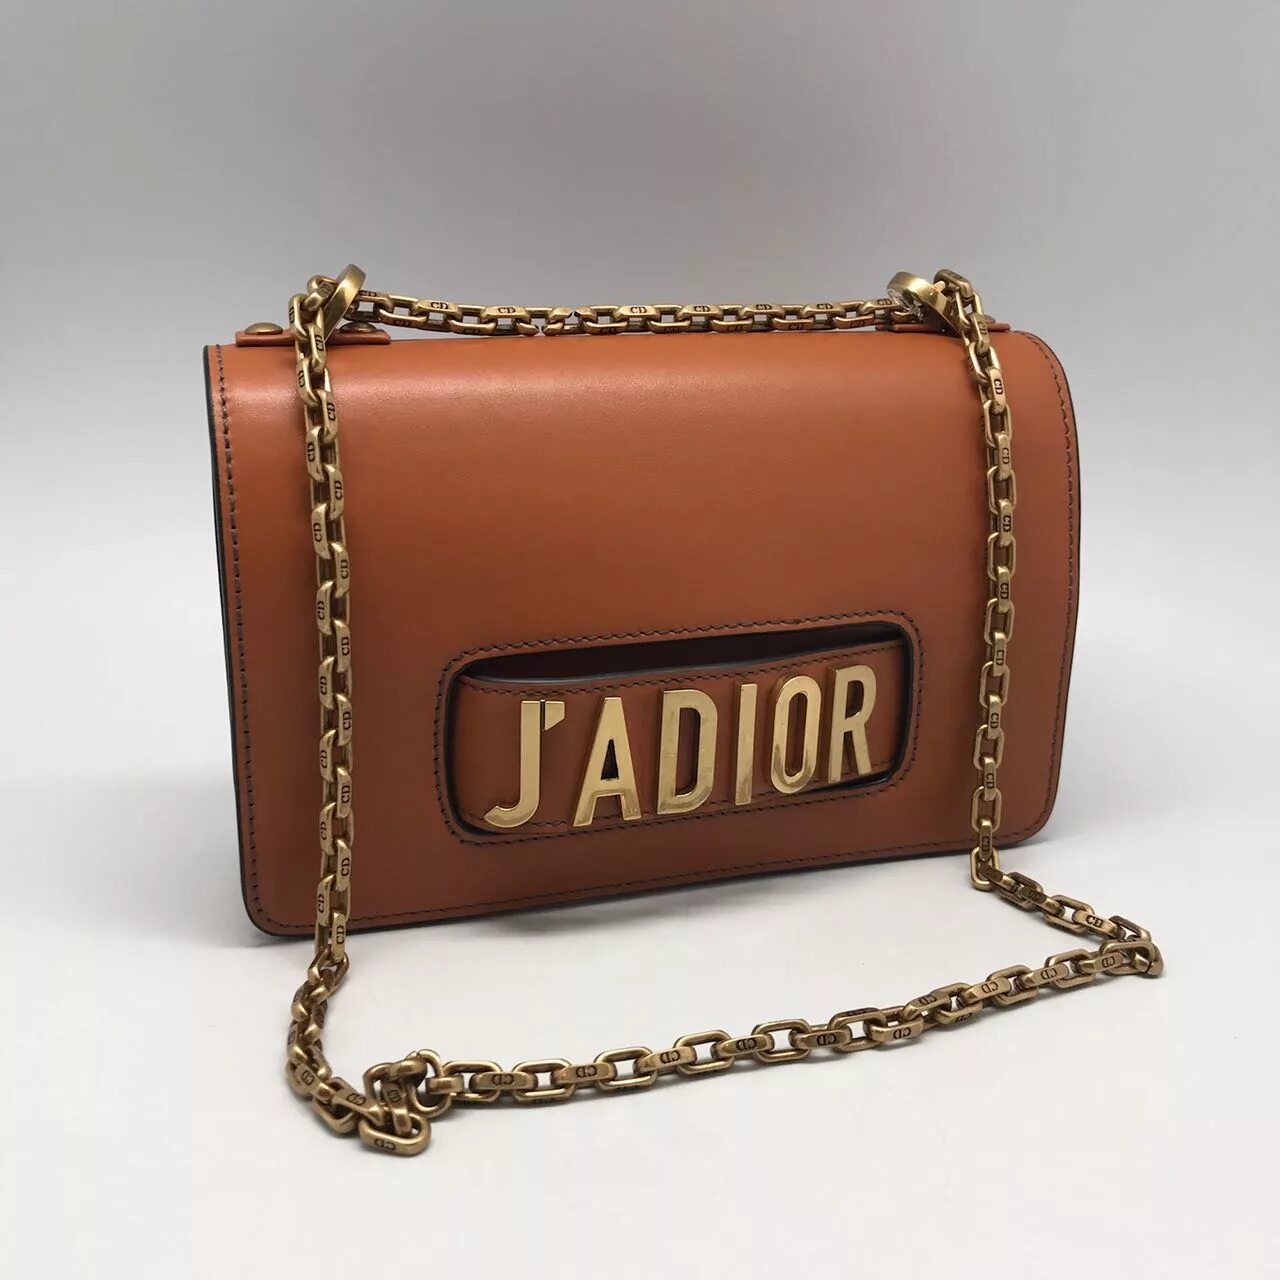 Купить сумку оригинал в интернет магазине. JADIOR сумка. Сумка Dior Jadore. Сумка Кристиан диор. Christian Dior сумка Jadore.